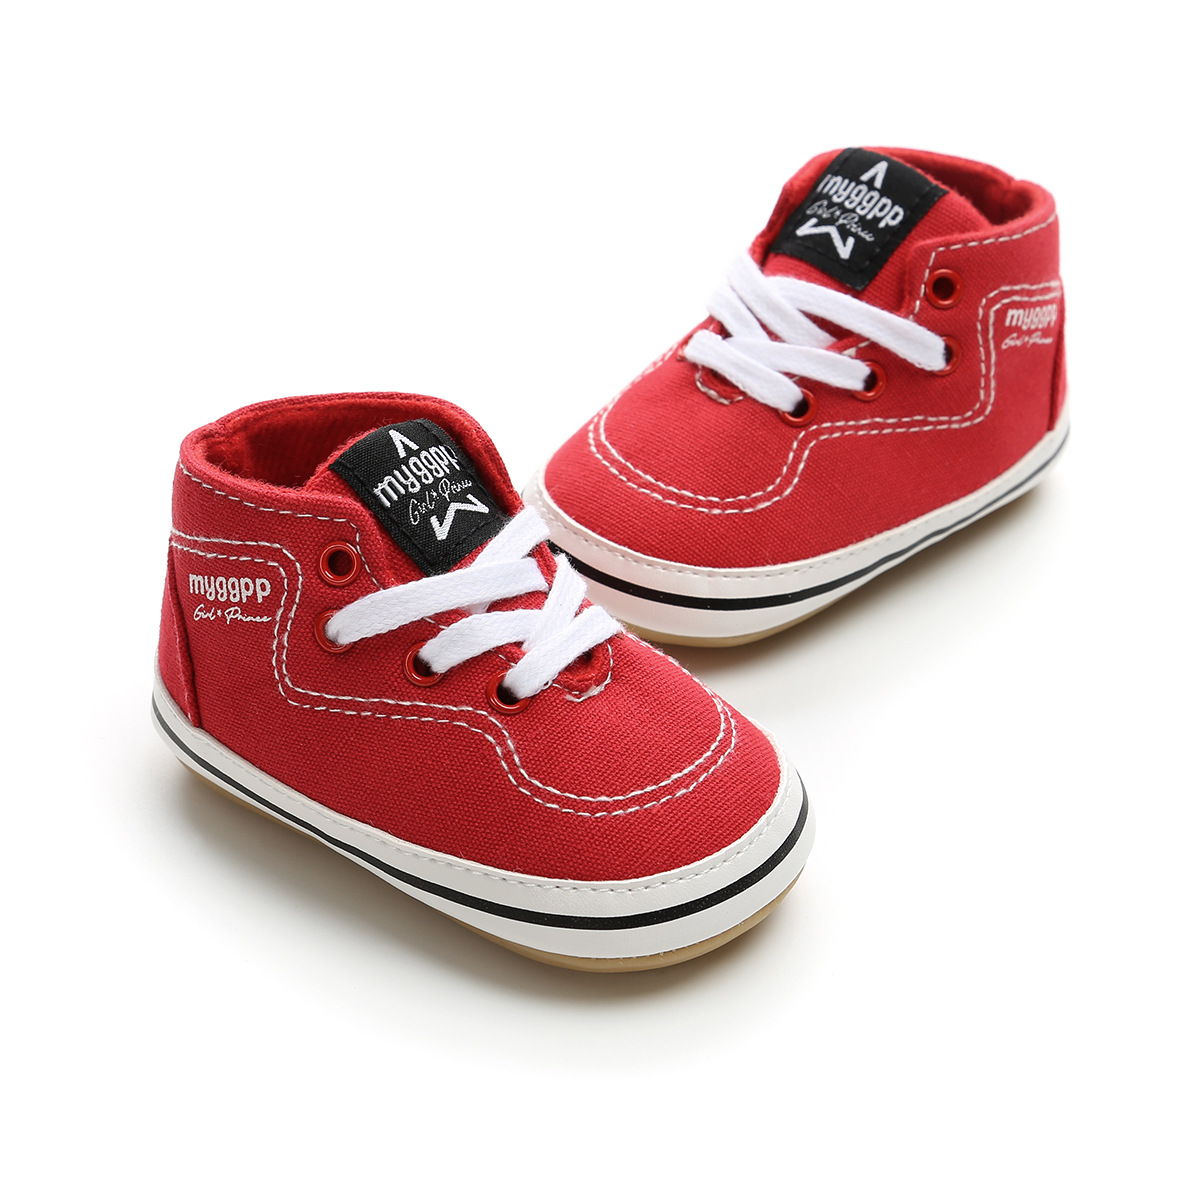 Chaussures bébé en coton - Ref 3436710 Image 195